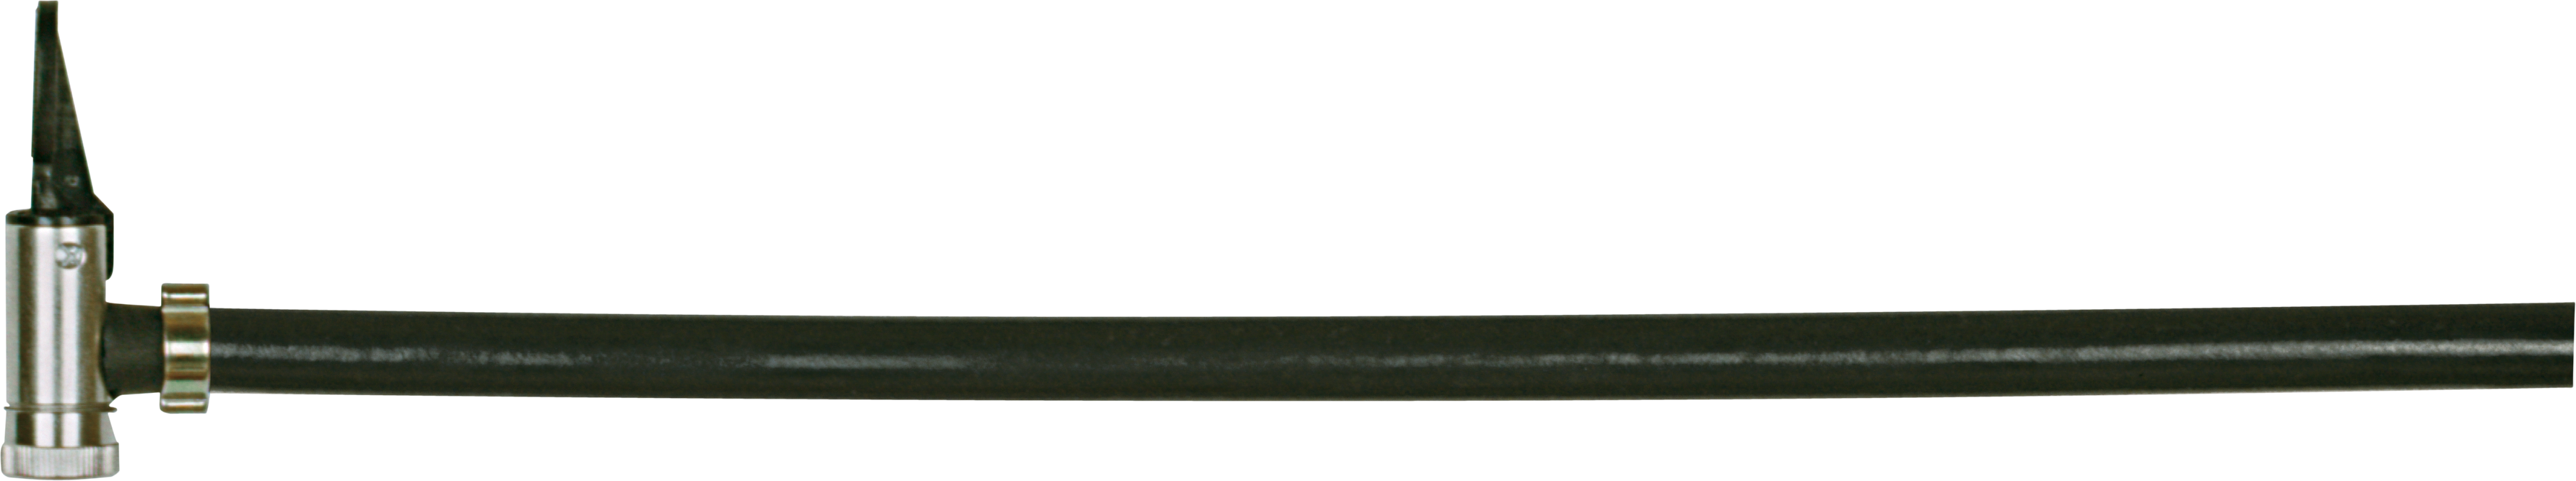 Reifenfüller 0-4 bar mit Momentstecker Blitz Pneurex Kombi BL-25144 